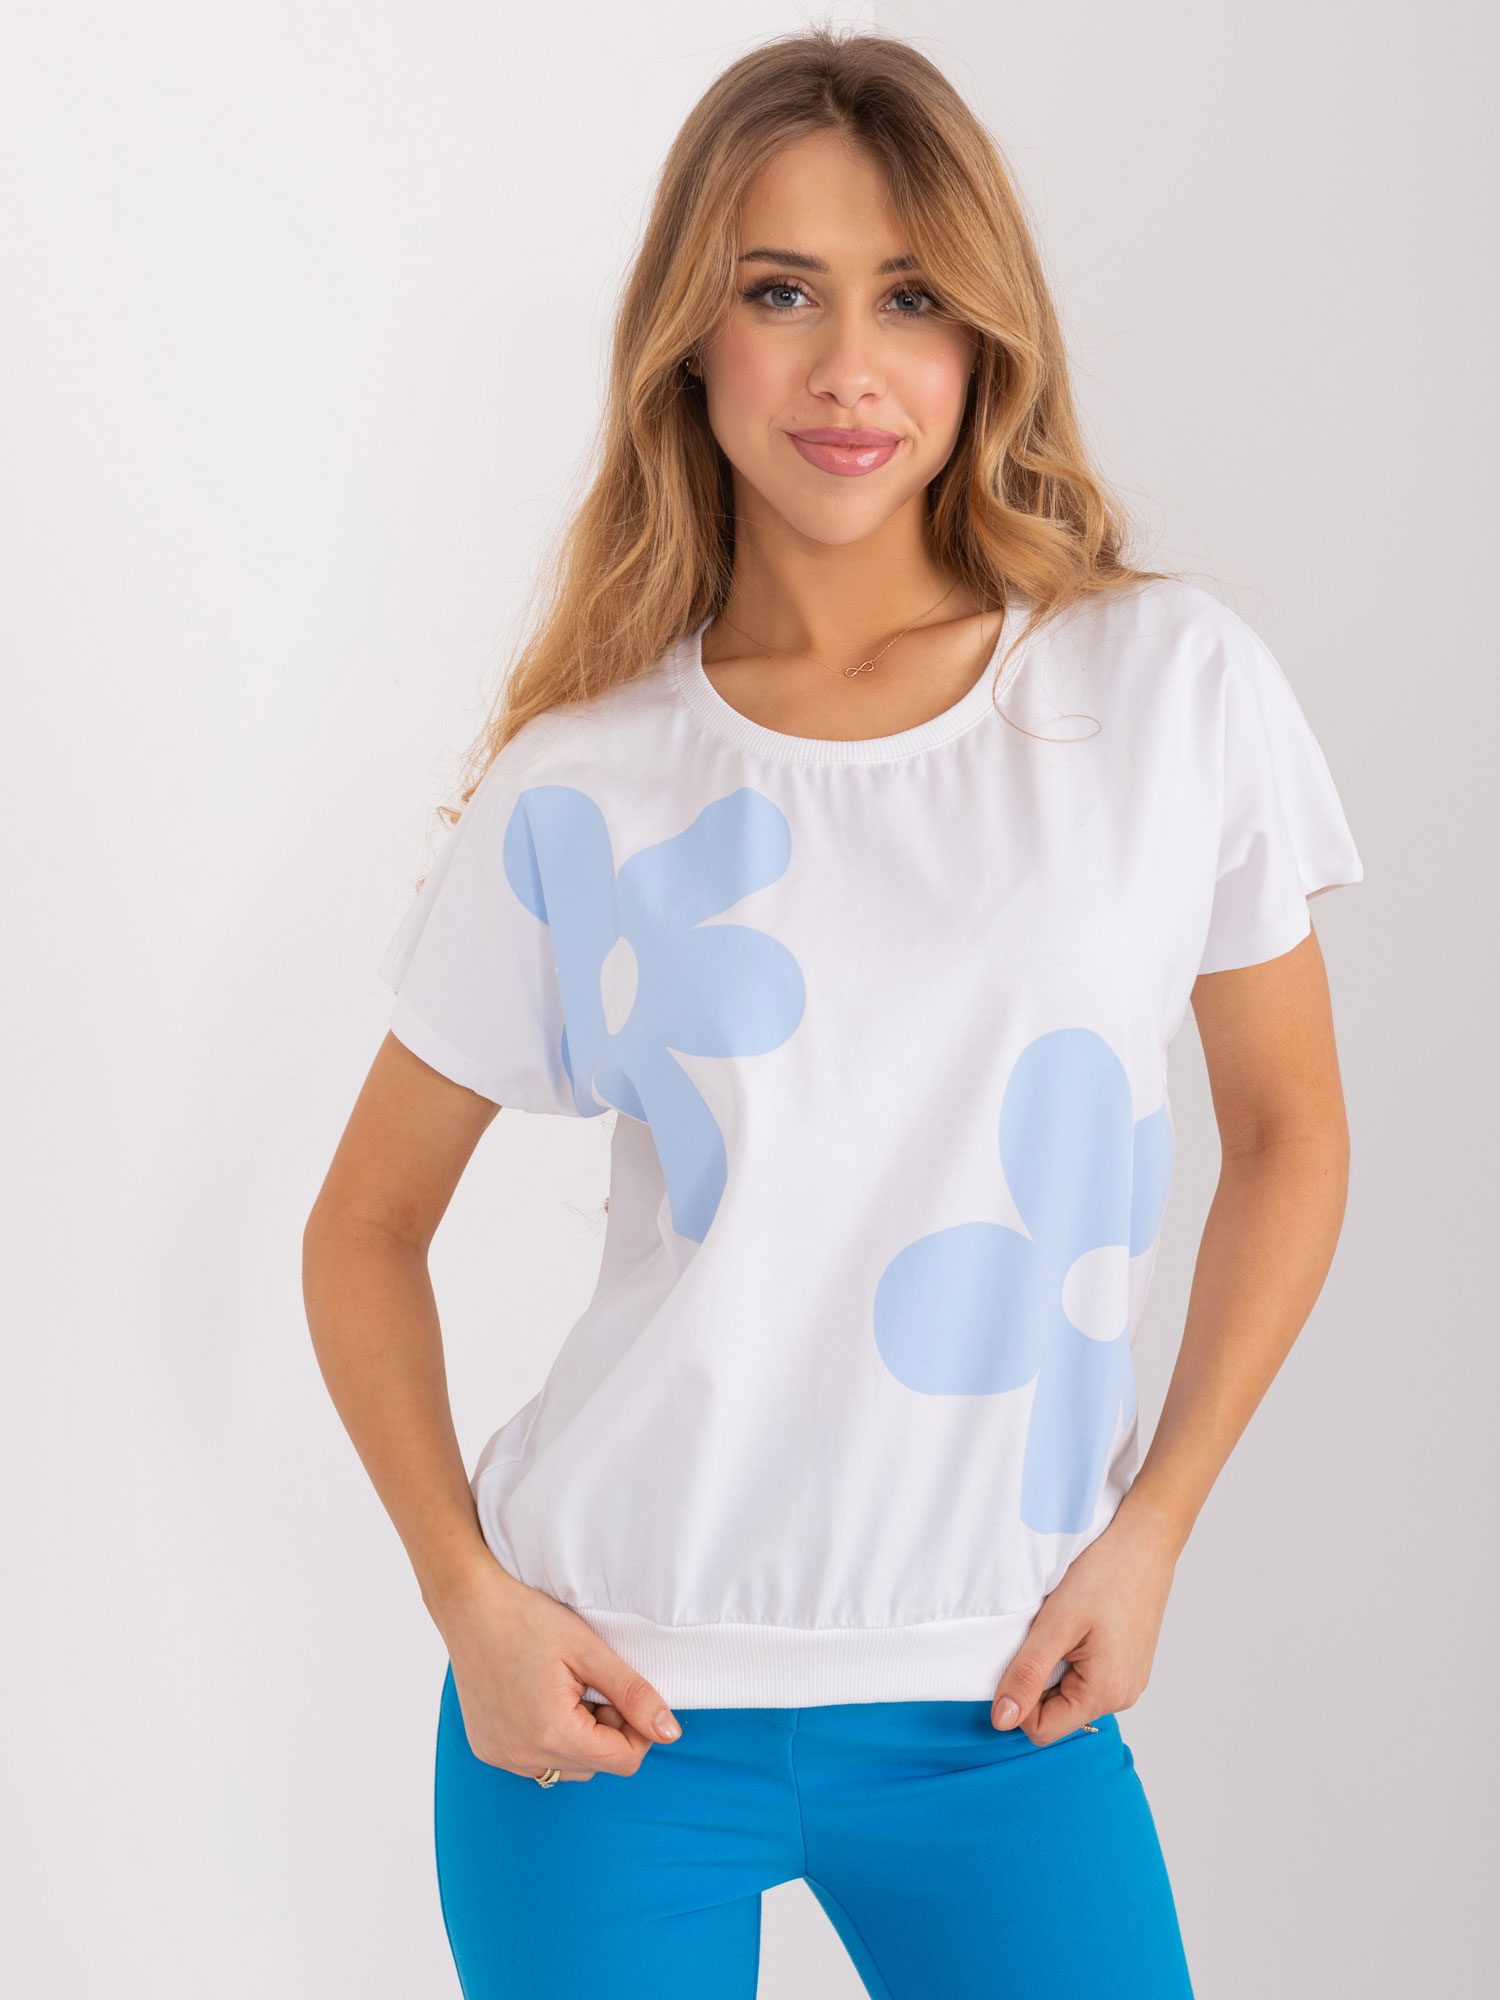 Bílo-modré tričko s aplikací RV-BZ-9628.26X-white-blue Velikost: S/M